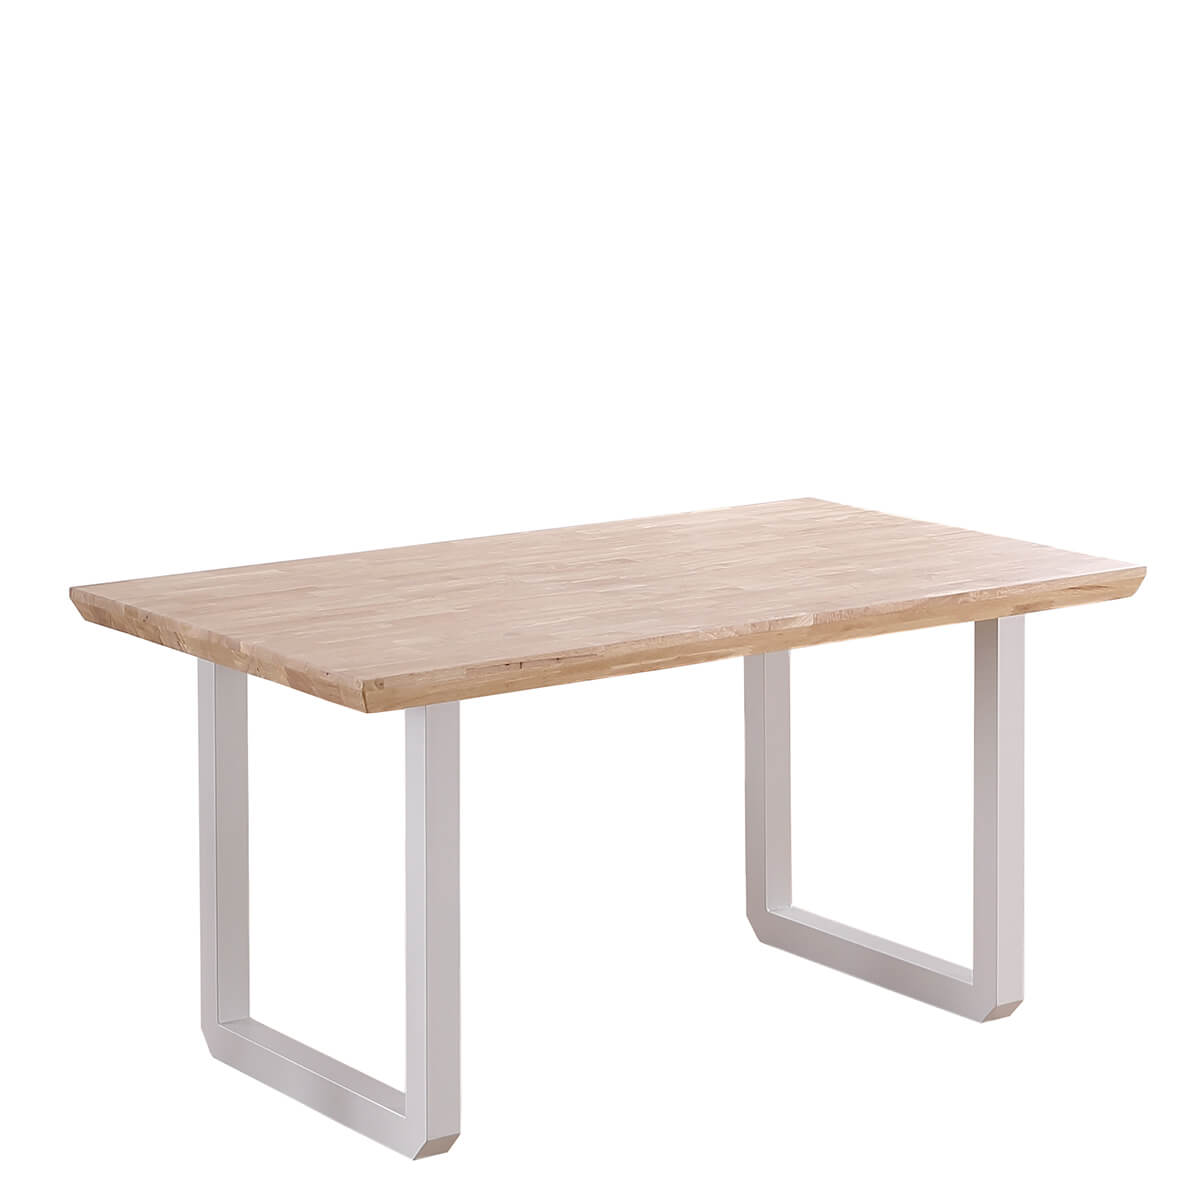 Mesita madera blanca y natural - Artikalia - Muebles de diseño